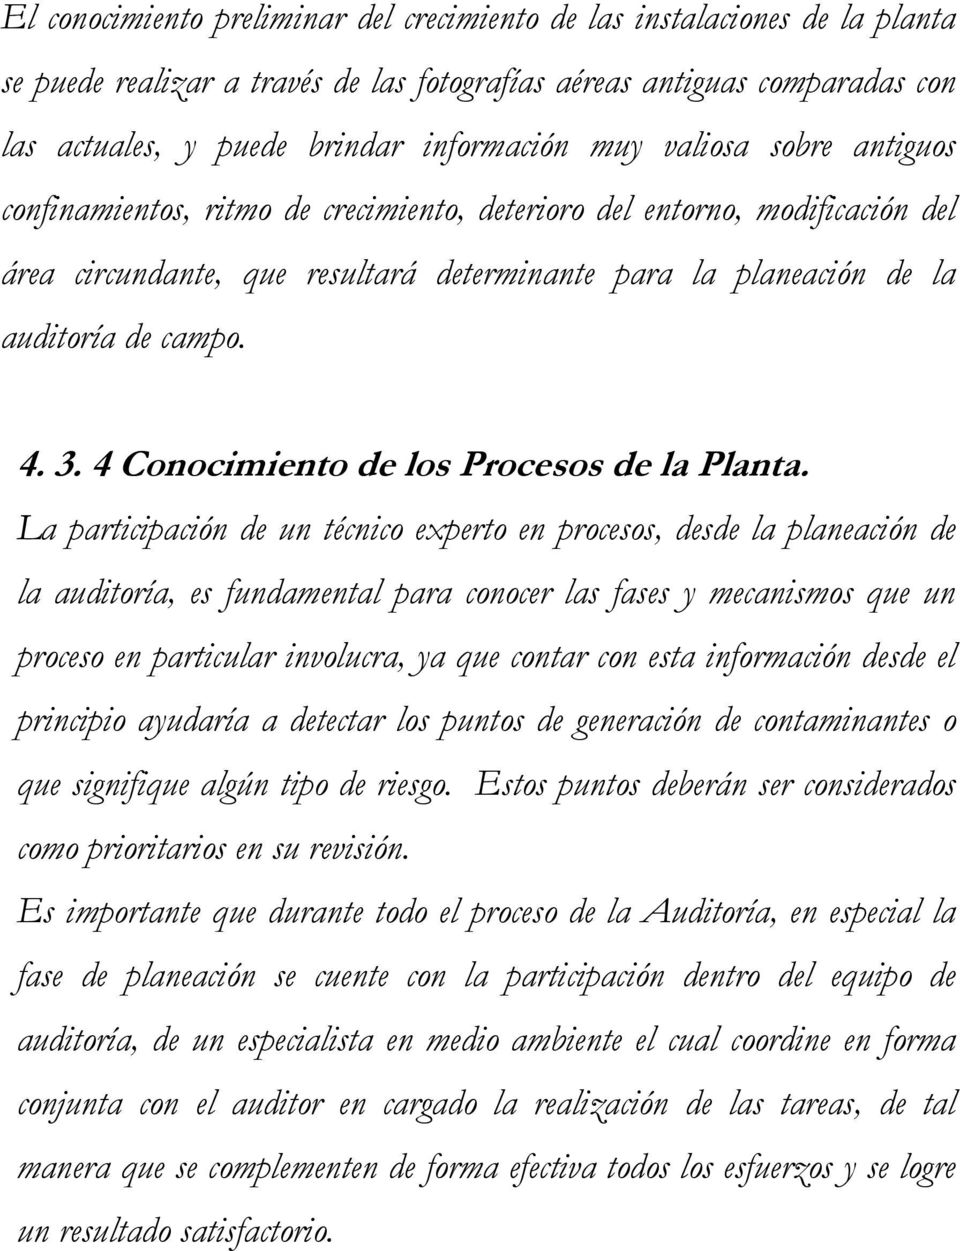 4 Conocimiento de los Procesos de la Planta.